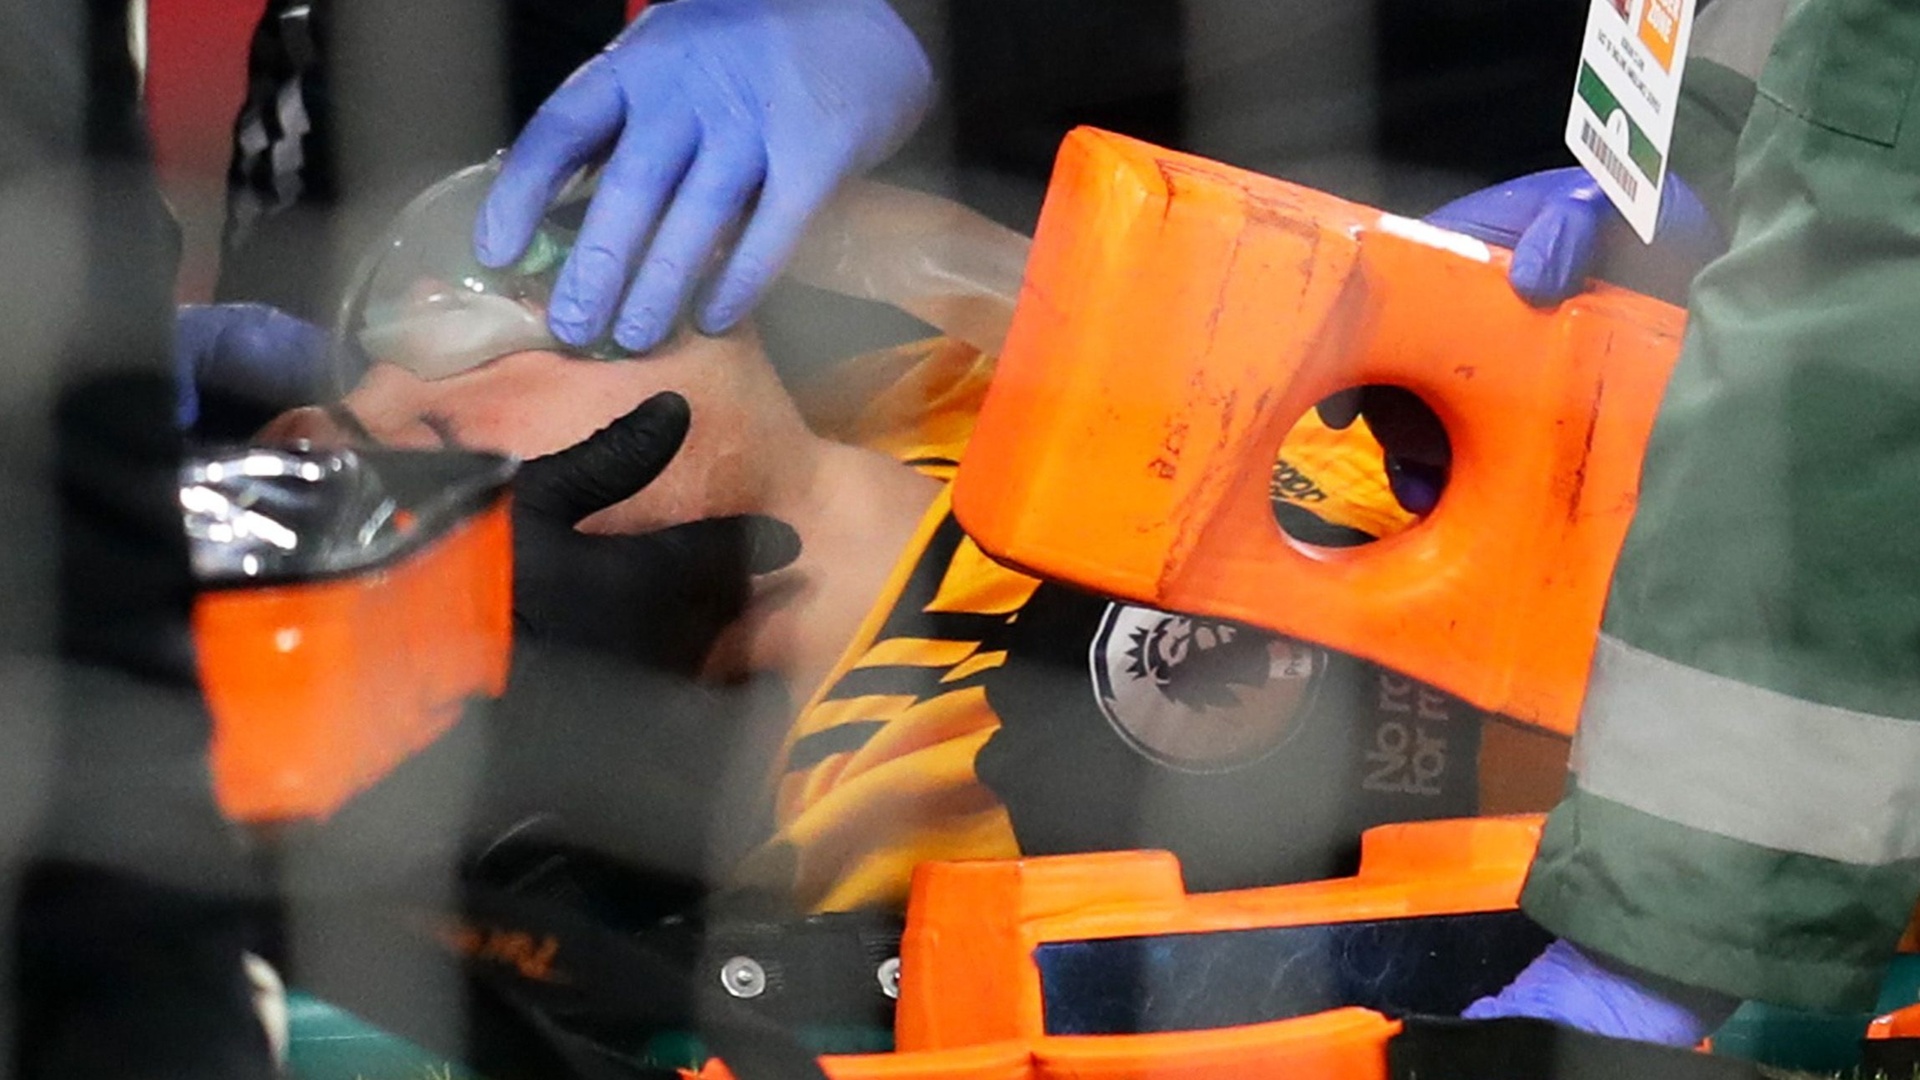 بعد الاصطدام المؤلم.. خيمنيز يخضع لجراحة في الرأس (فيديو)